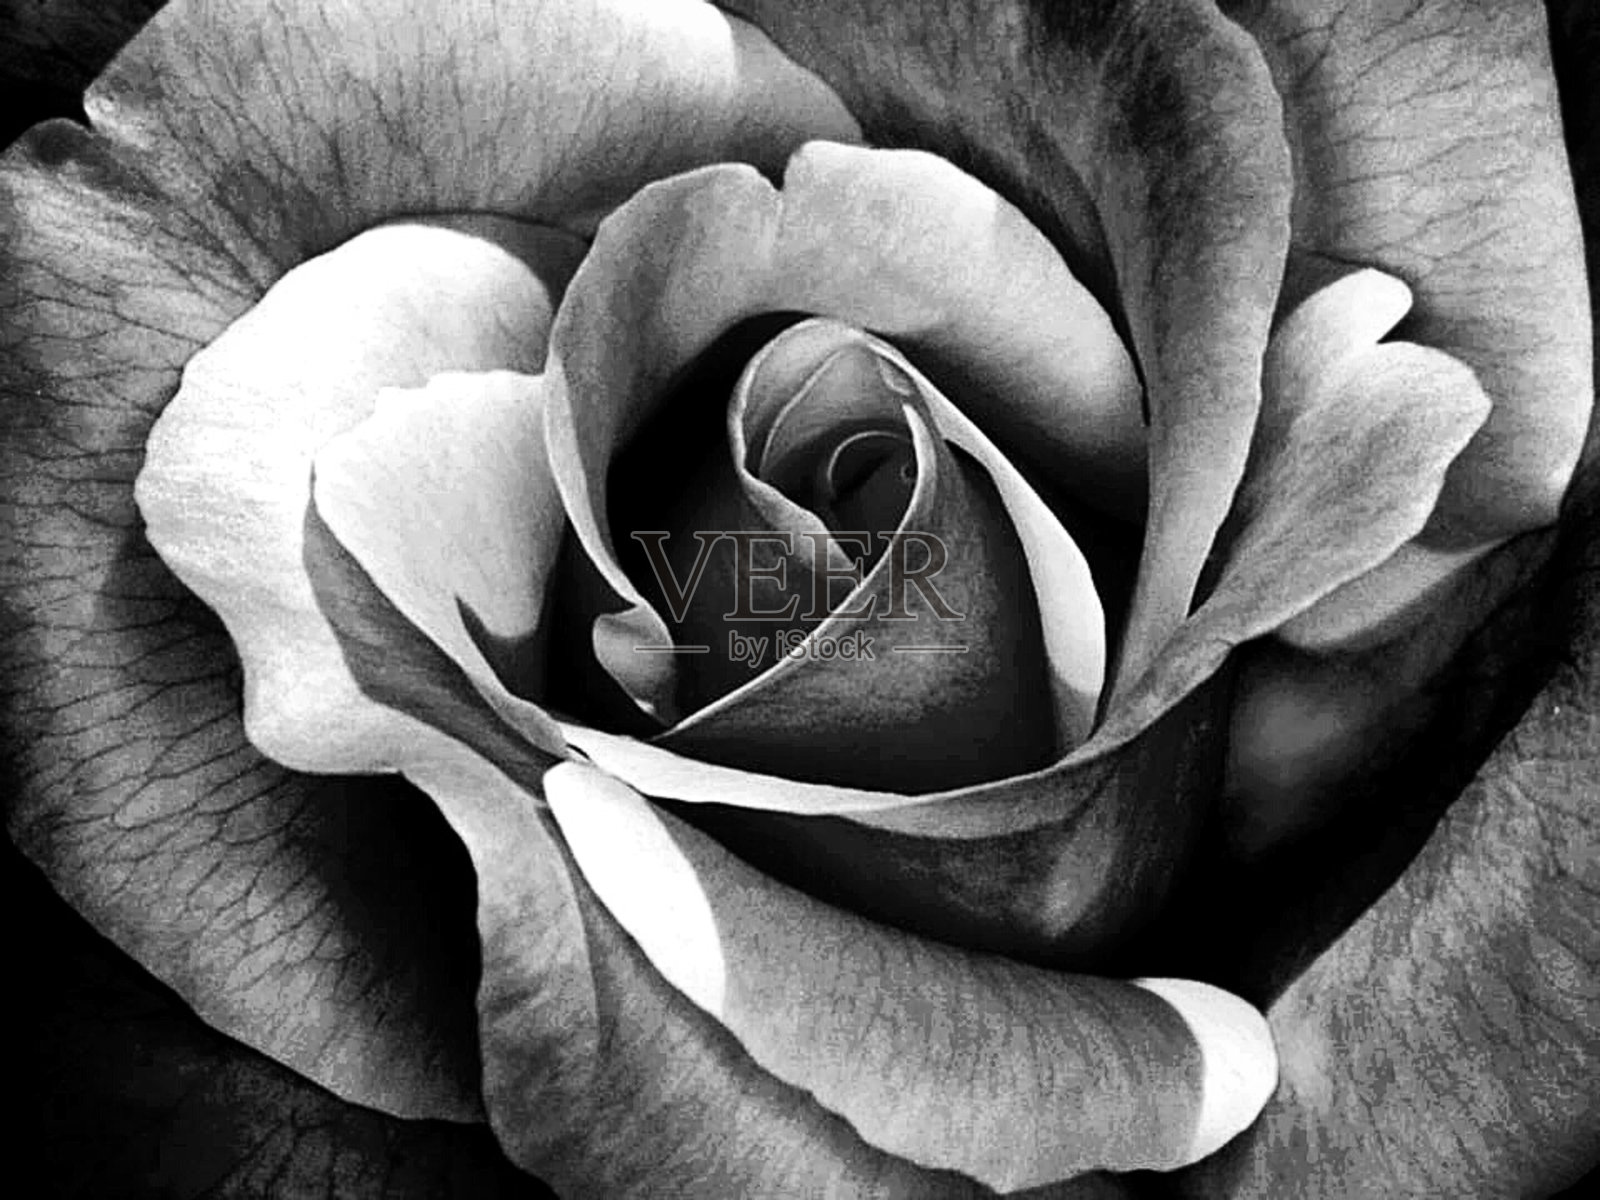 图片素材 : 黑与白, 厂, 白色, 花瓣, 花的, 爱, 浪漫, 黑暗, 黑色, 特写, 宏观摄影, 开花植物, 玫瑰家庭, 静物摄影 ...